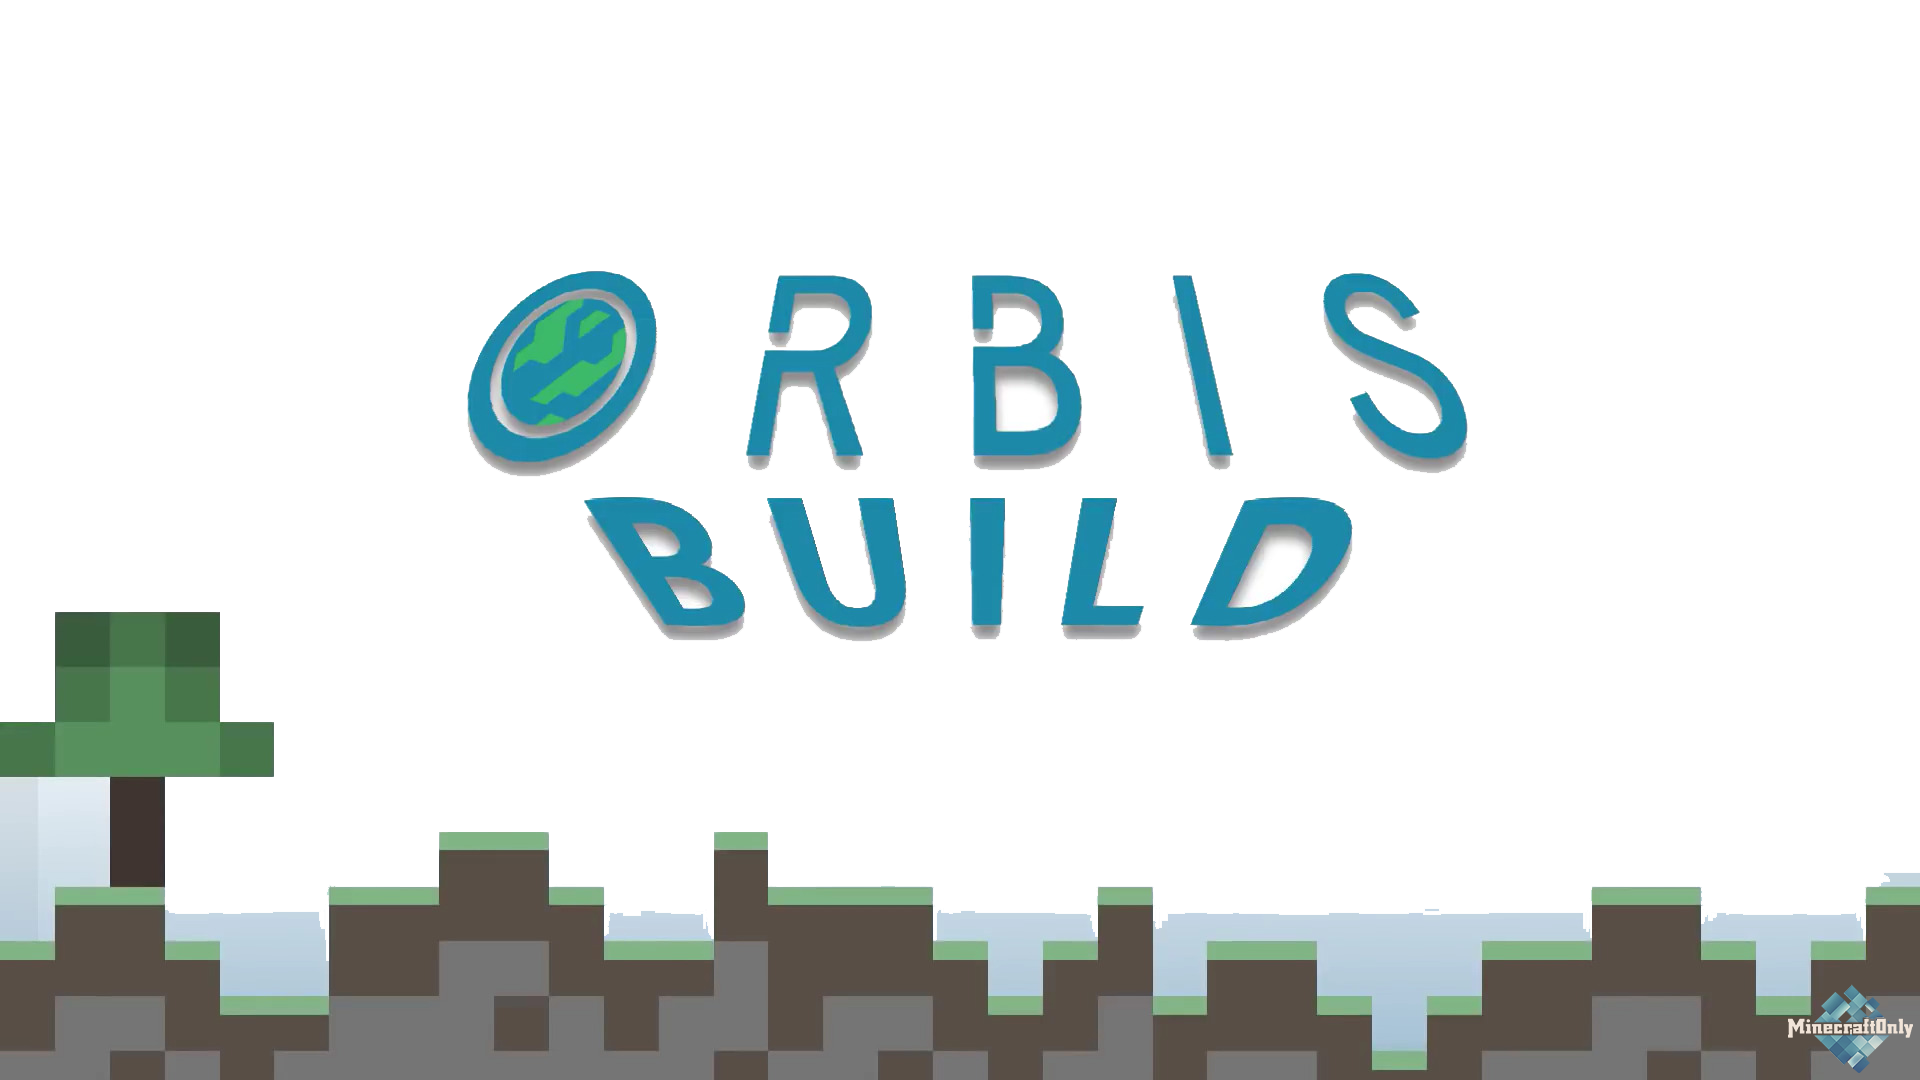 [1.12.2] Orbis Build